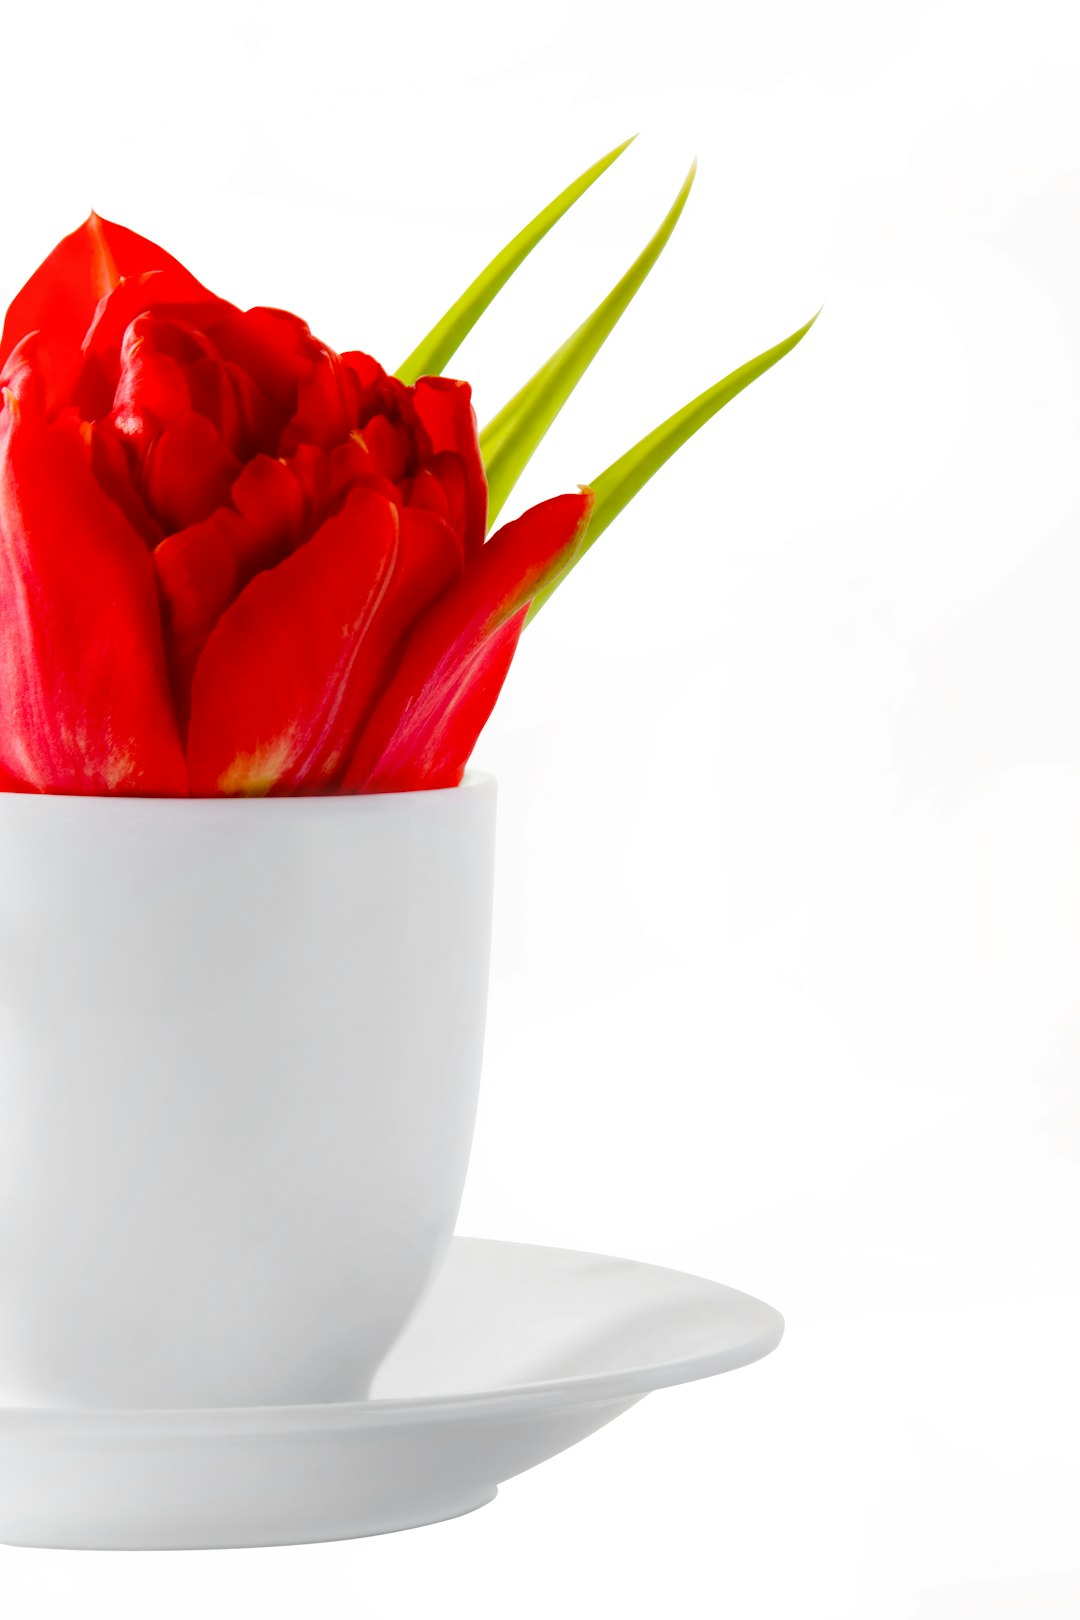 red tulips in white ceramic bowl